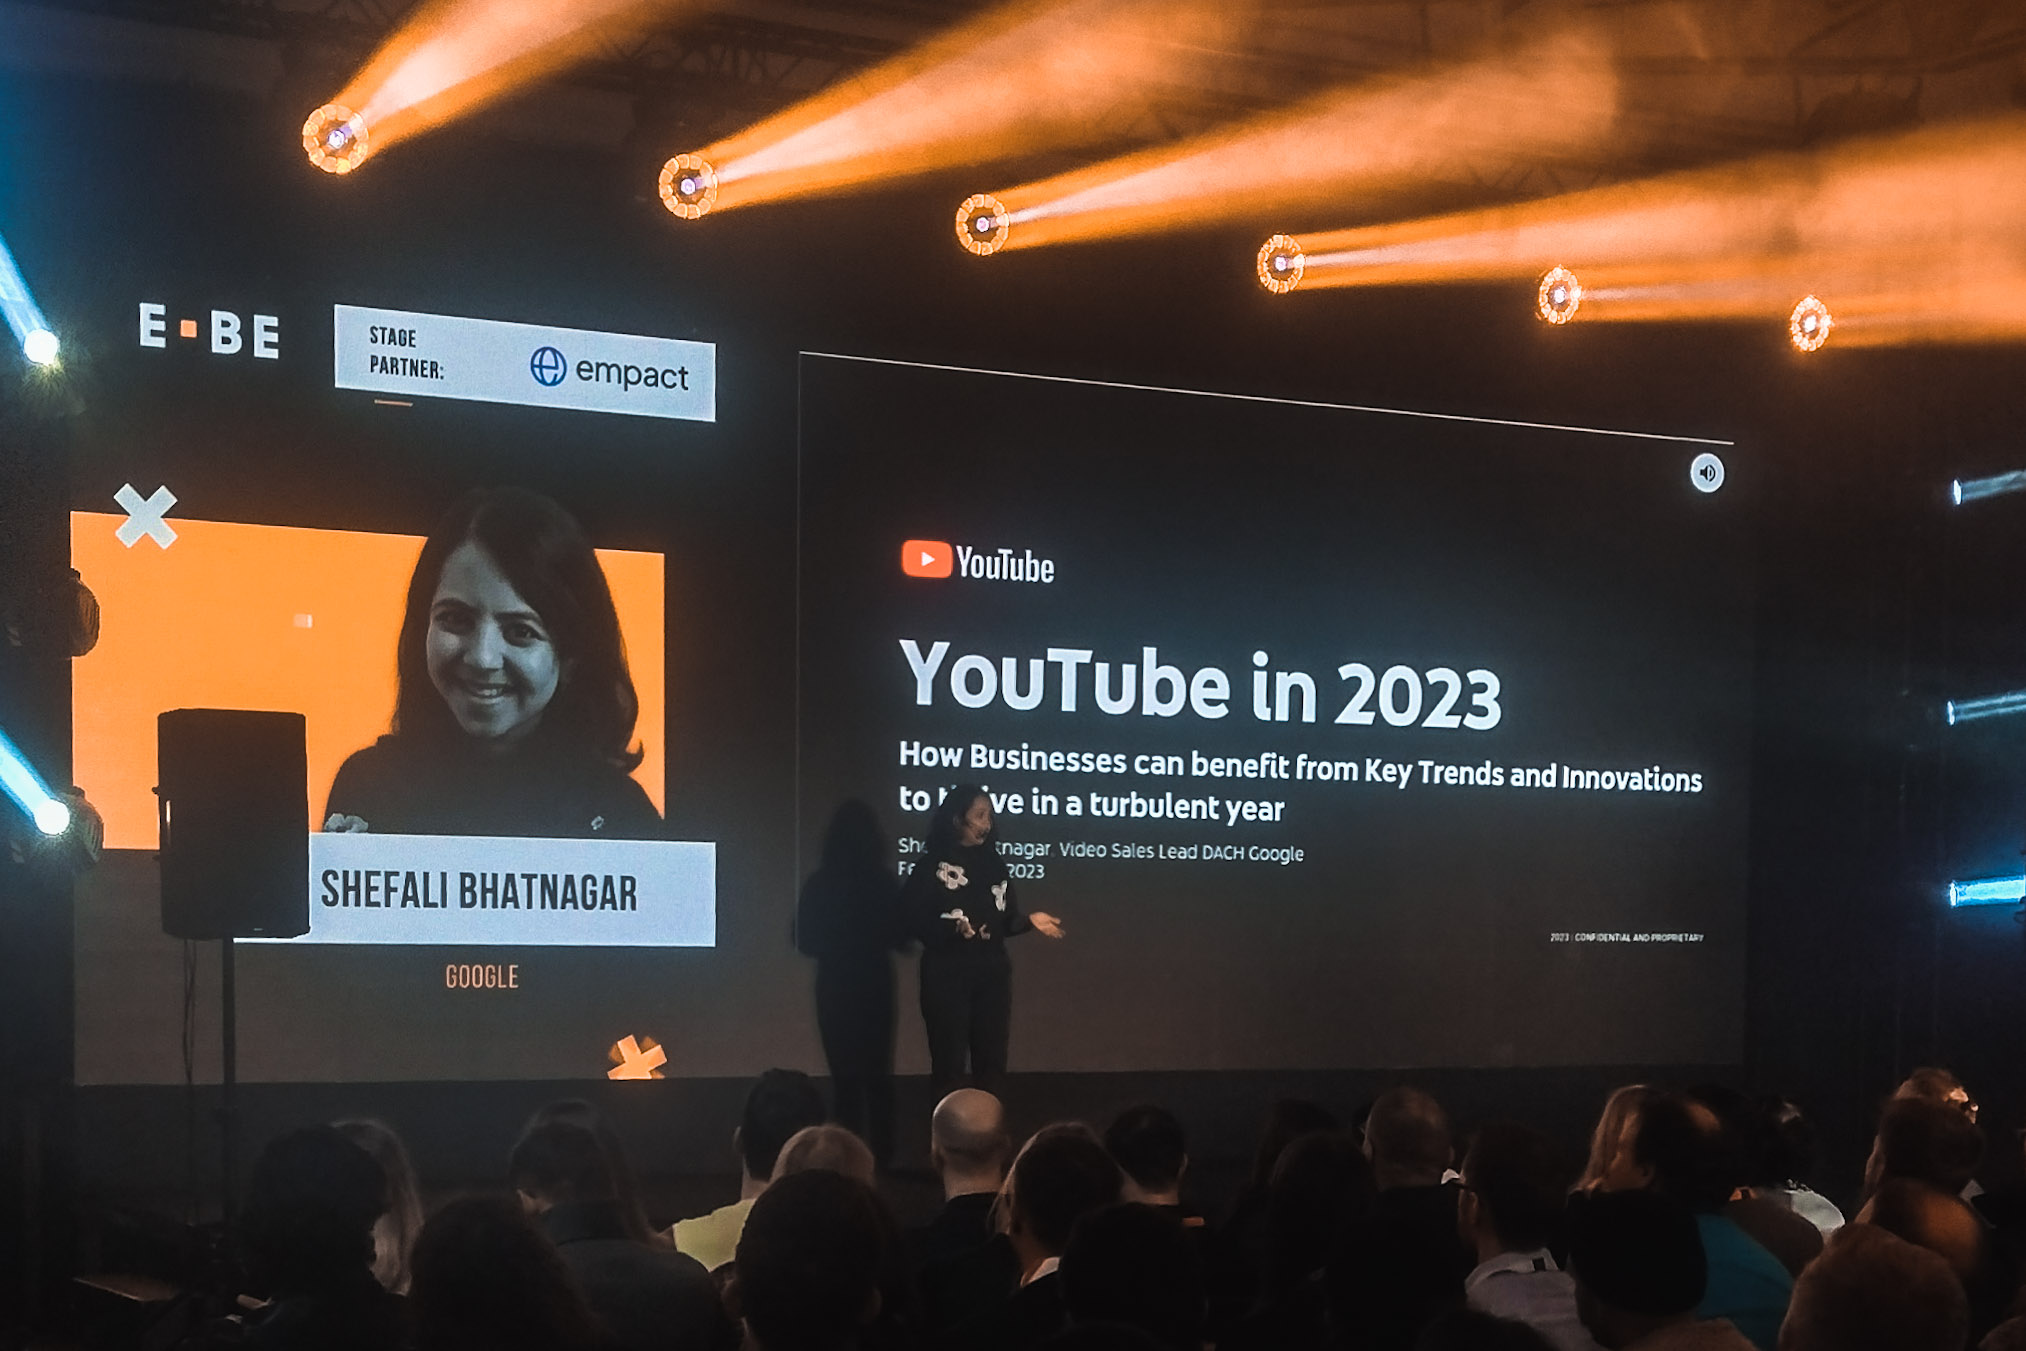 Vortrag auf einer Bühne bei der E-Commerce Berlin Expo 2023 von Google bzw YouTube.